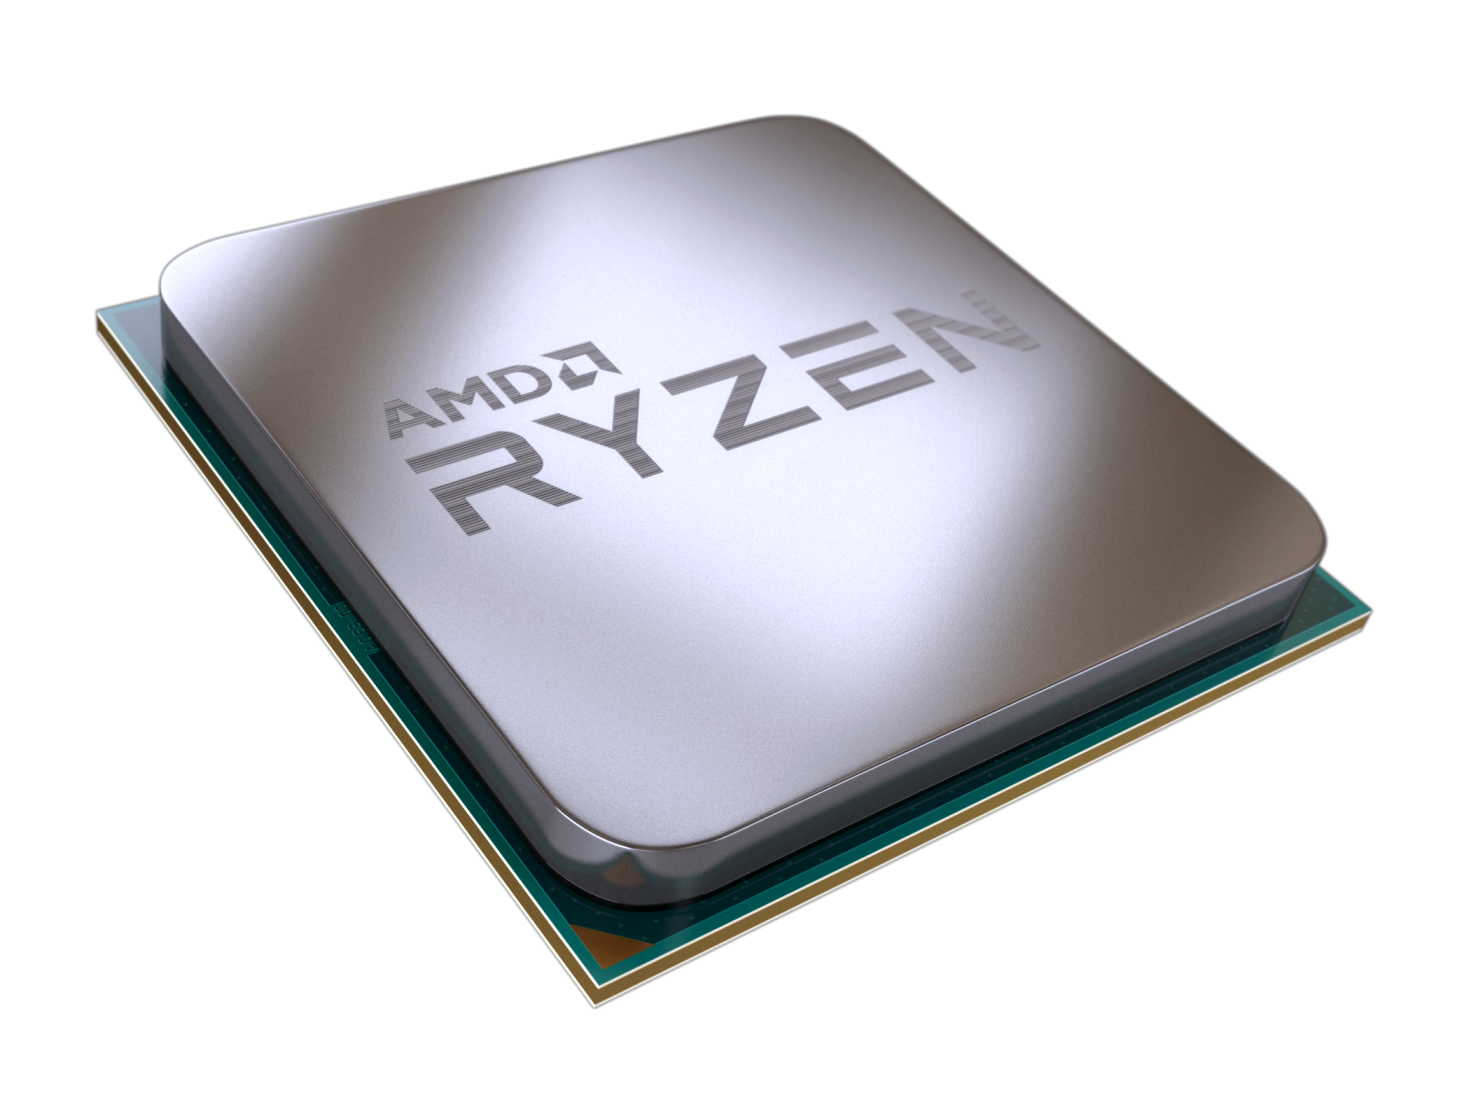 ryzen chip 1 ครั้งแรกของ AMD Ryzen Desktop APUs กับกราฟิกที่ทรงพลังที่สุดในโลกบนเดสก์ท็อปโปรเซสเซอร์1 พร้อมวางจำหน่ายทั่วโลกแล้ววันนี้